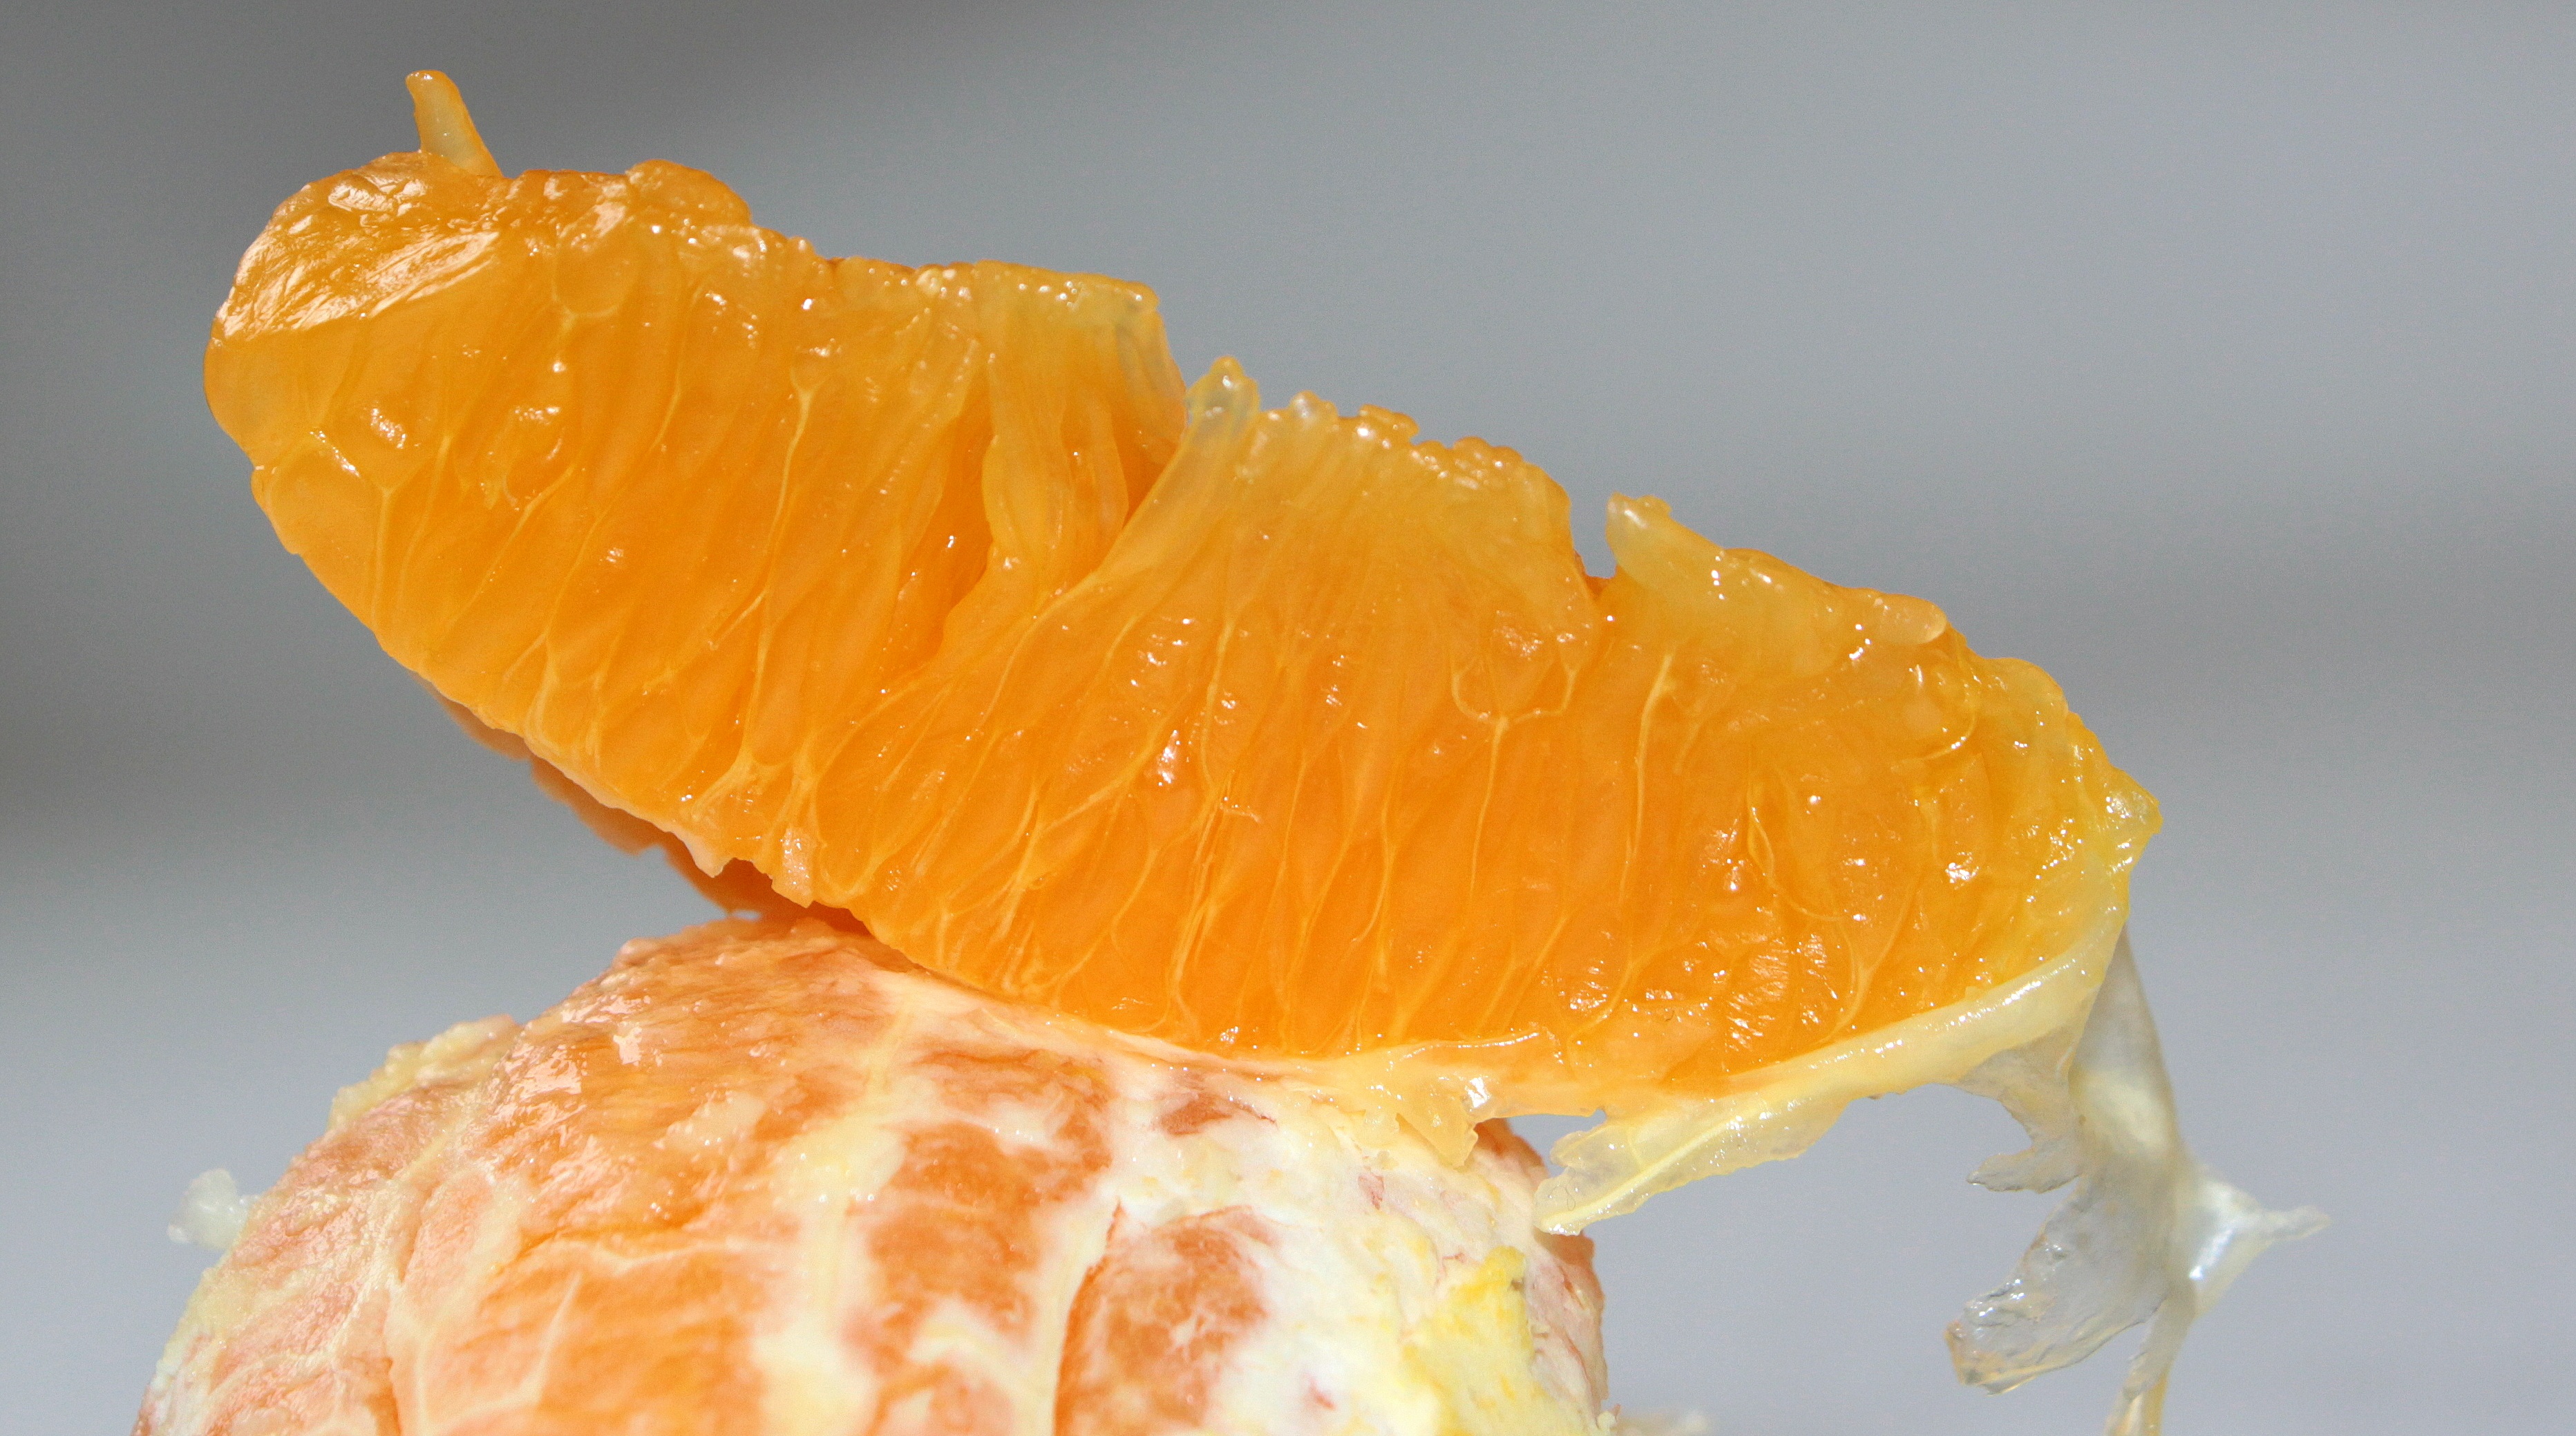 Orange slices photo